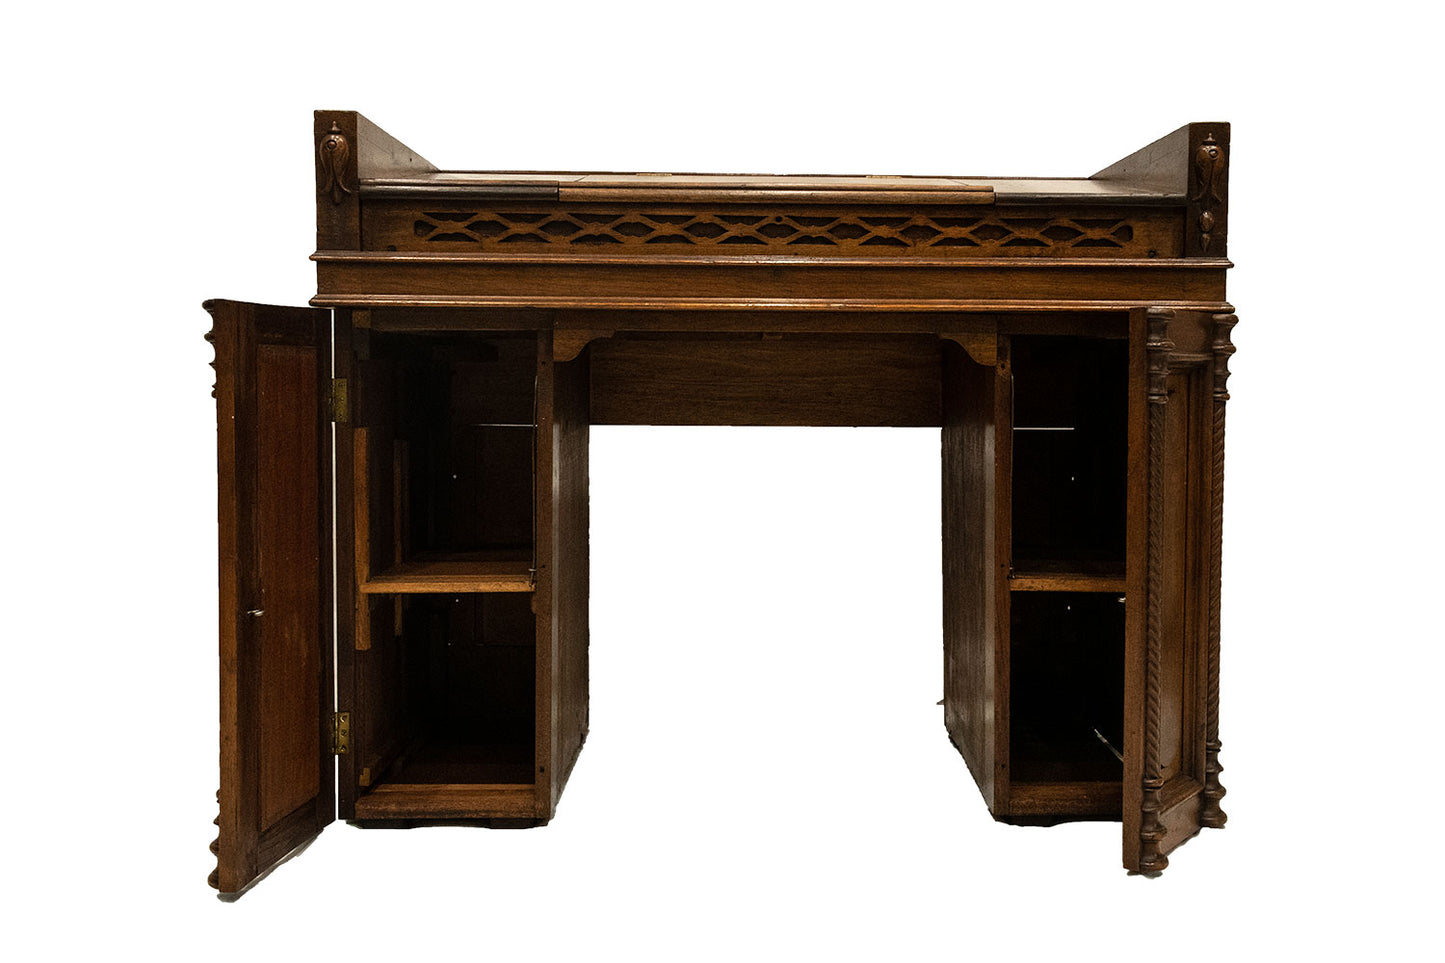 Original Manti Temple Registrar/Recommend Desk - 1888 Original Handmade